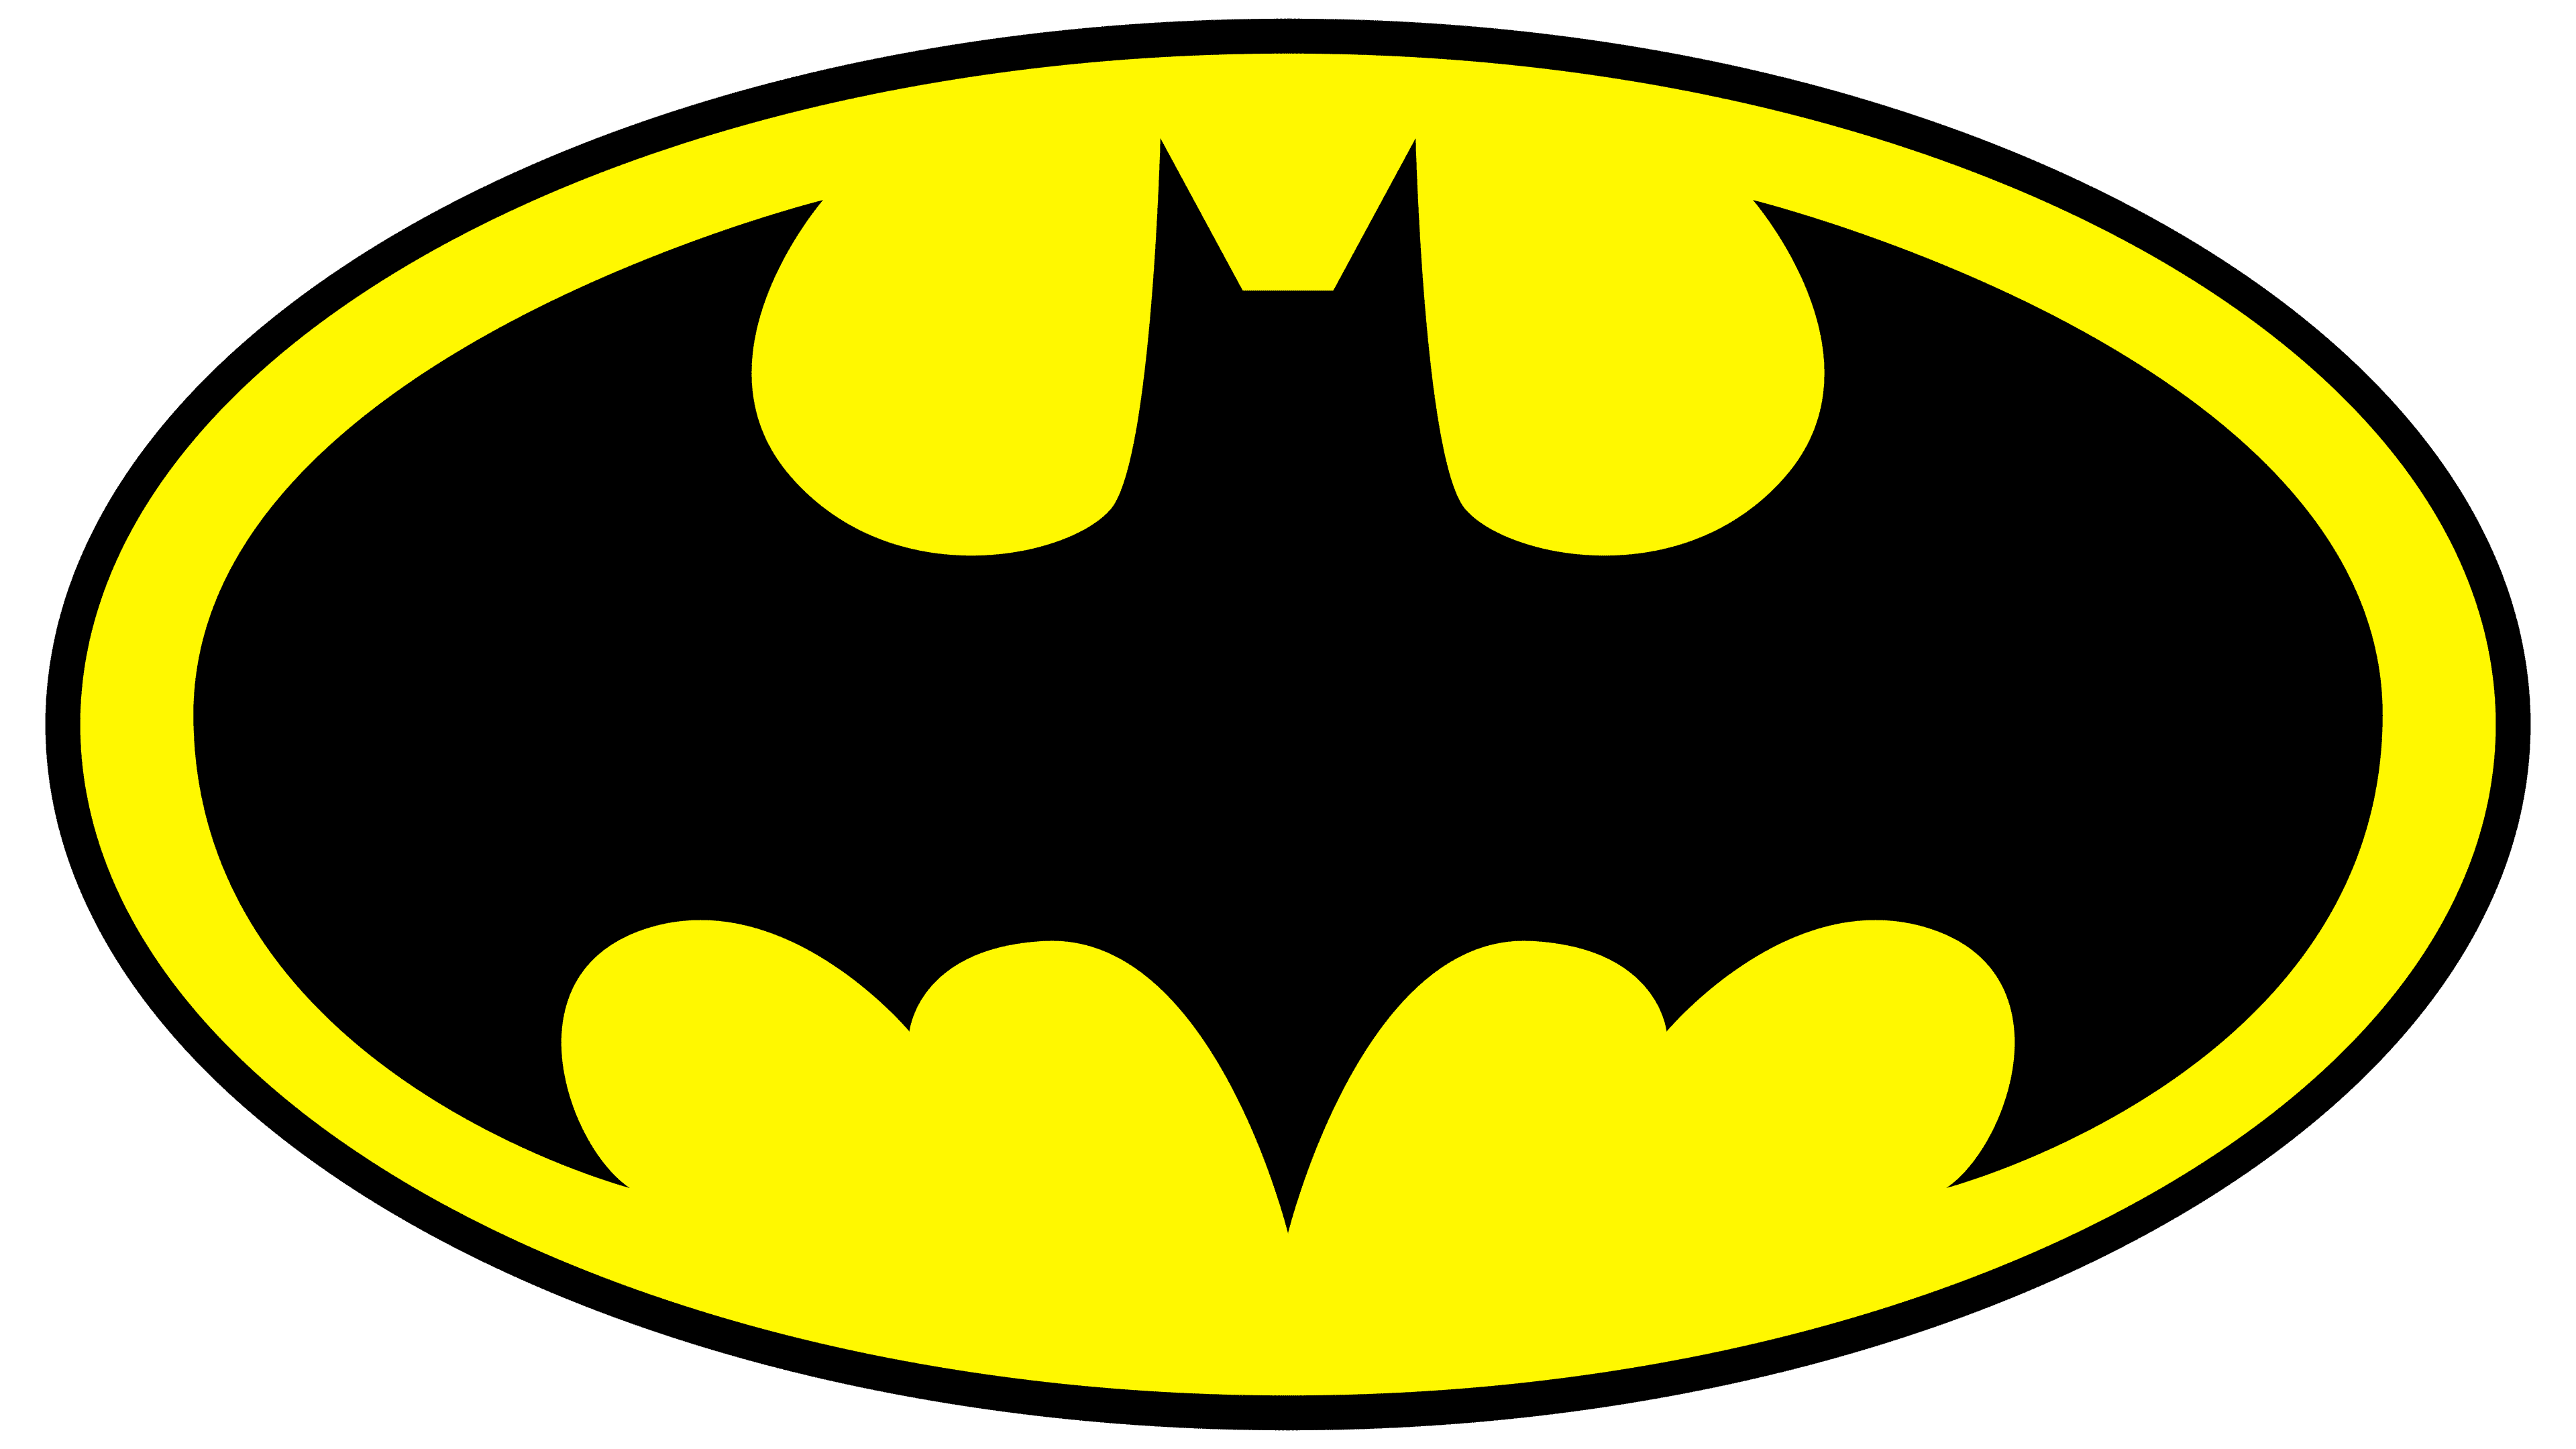 Batman Logo Printable